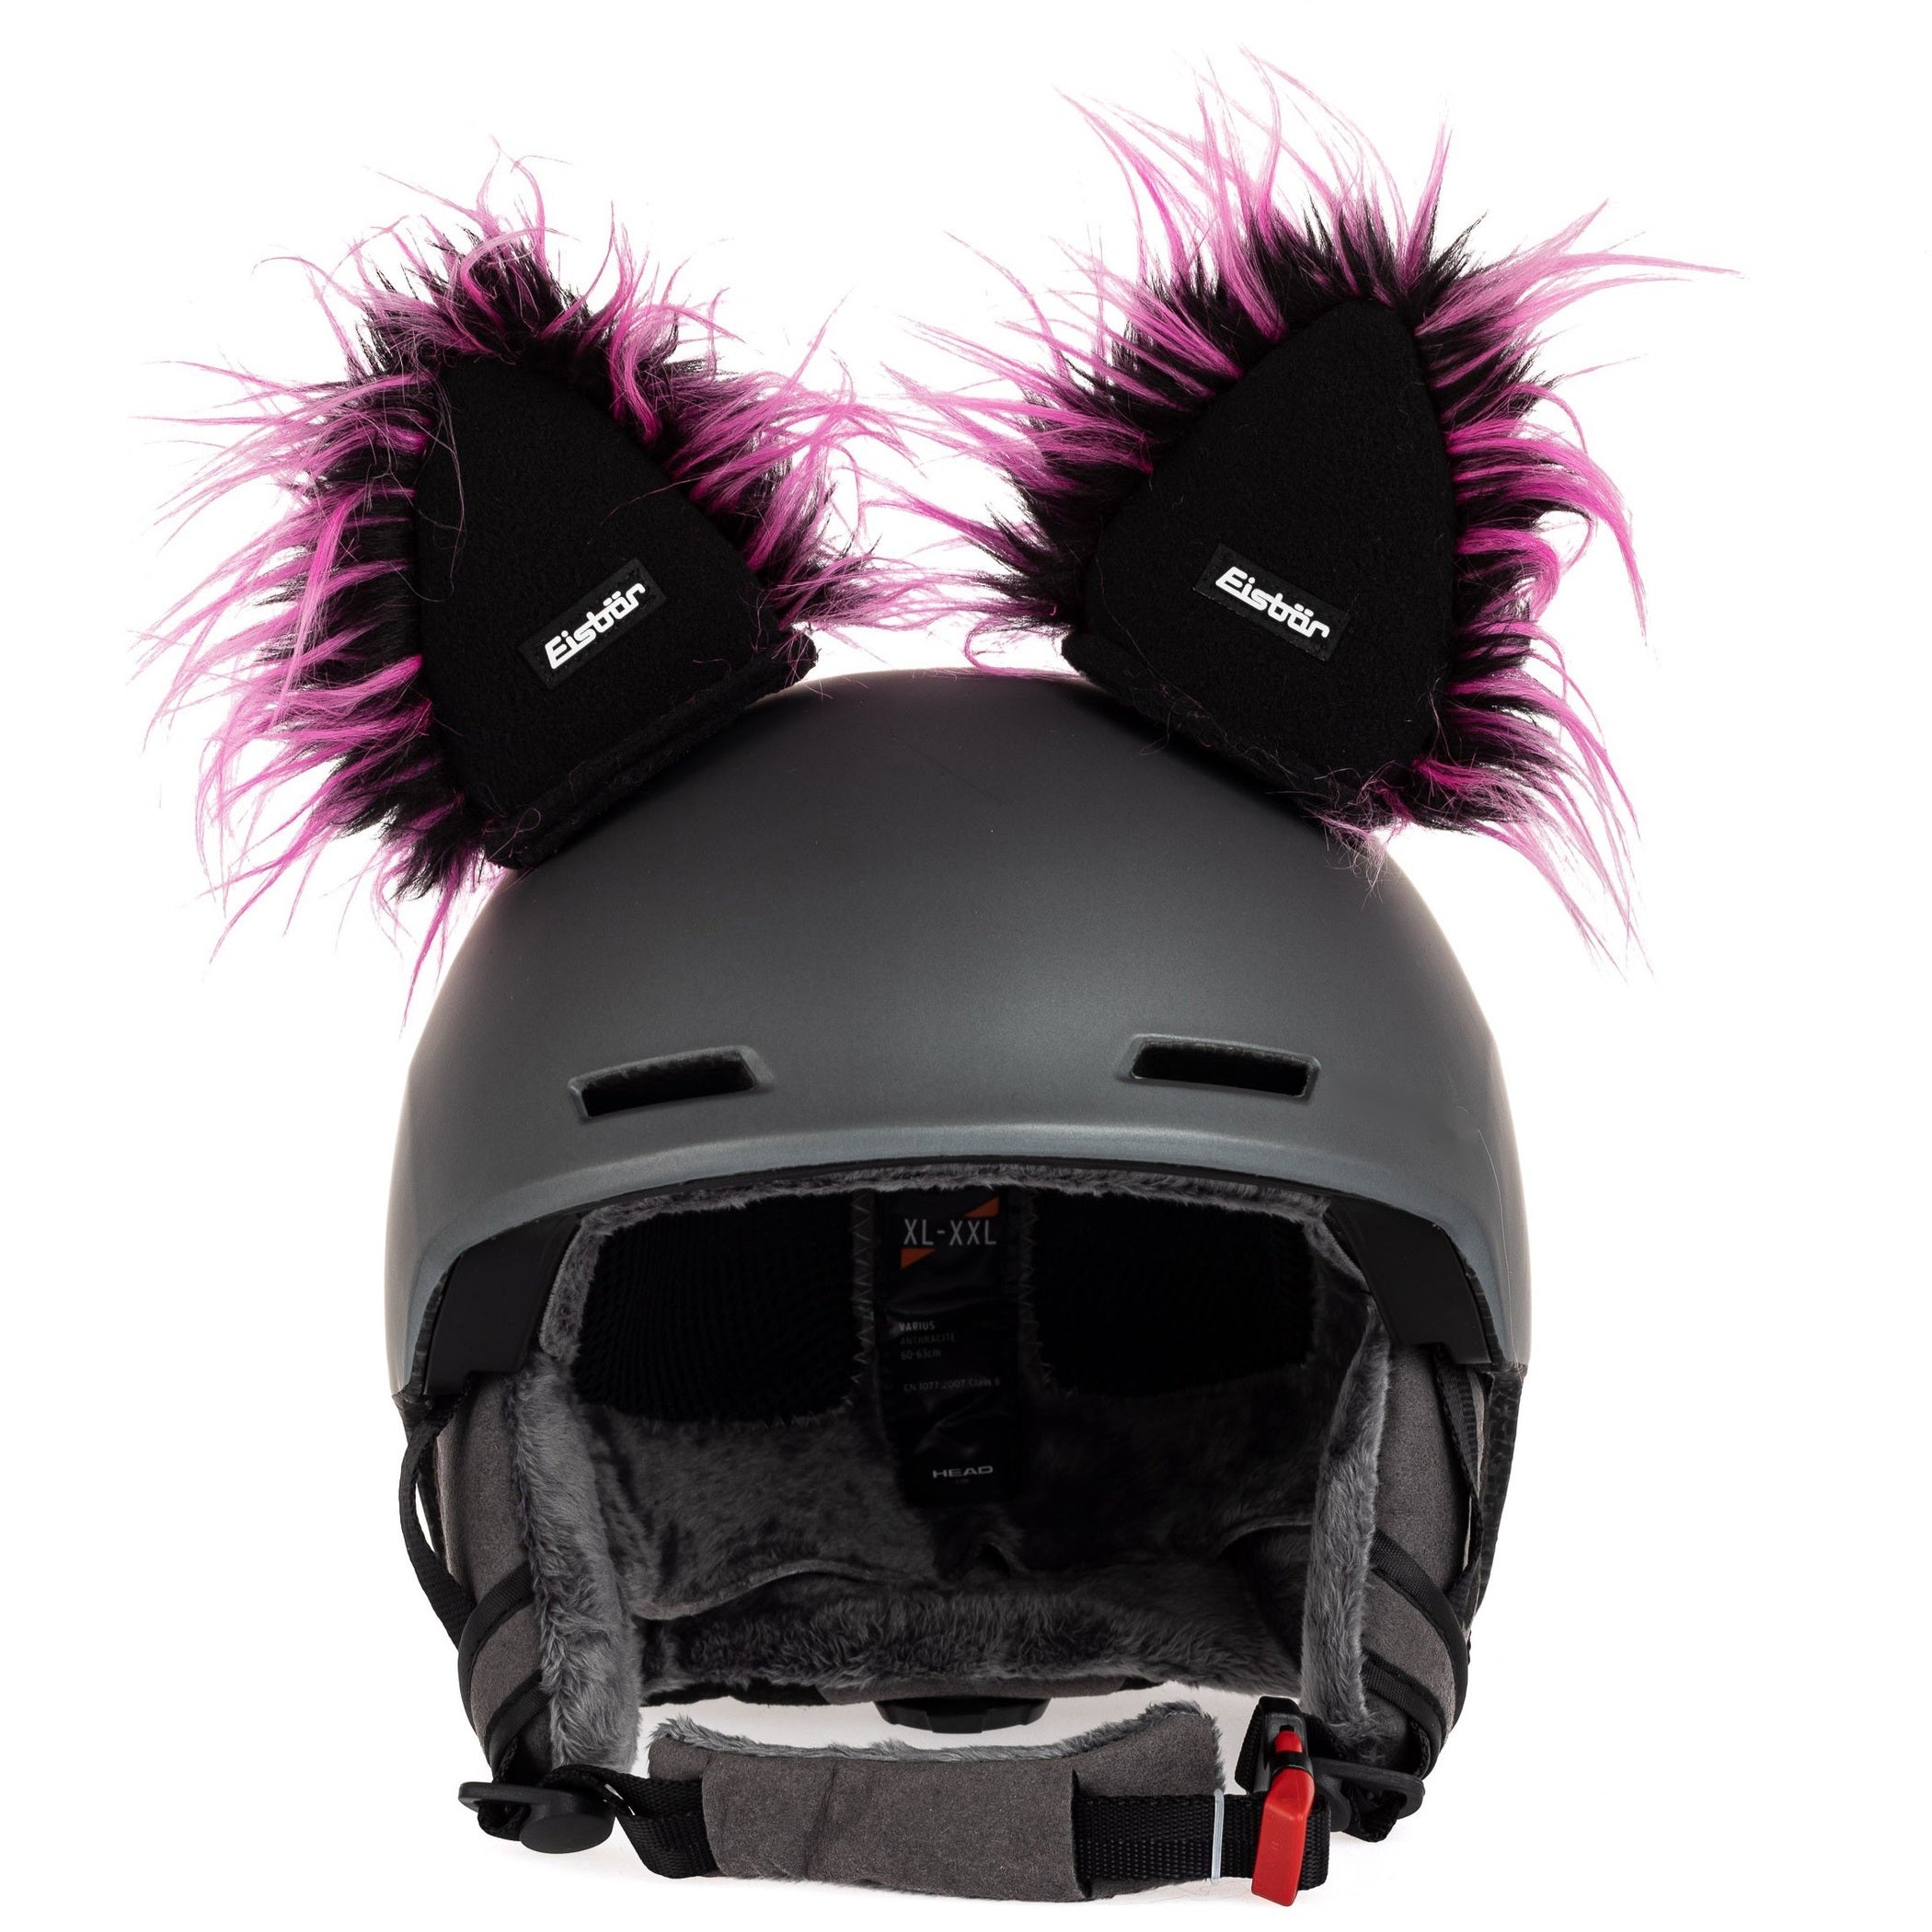 Sci moto orecchie casco decorazione morbida rana occhi corona con